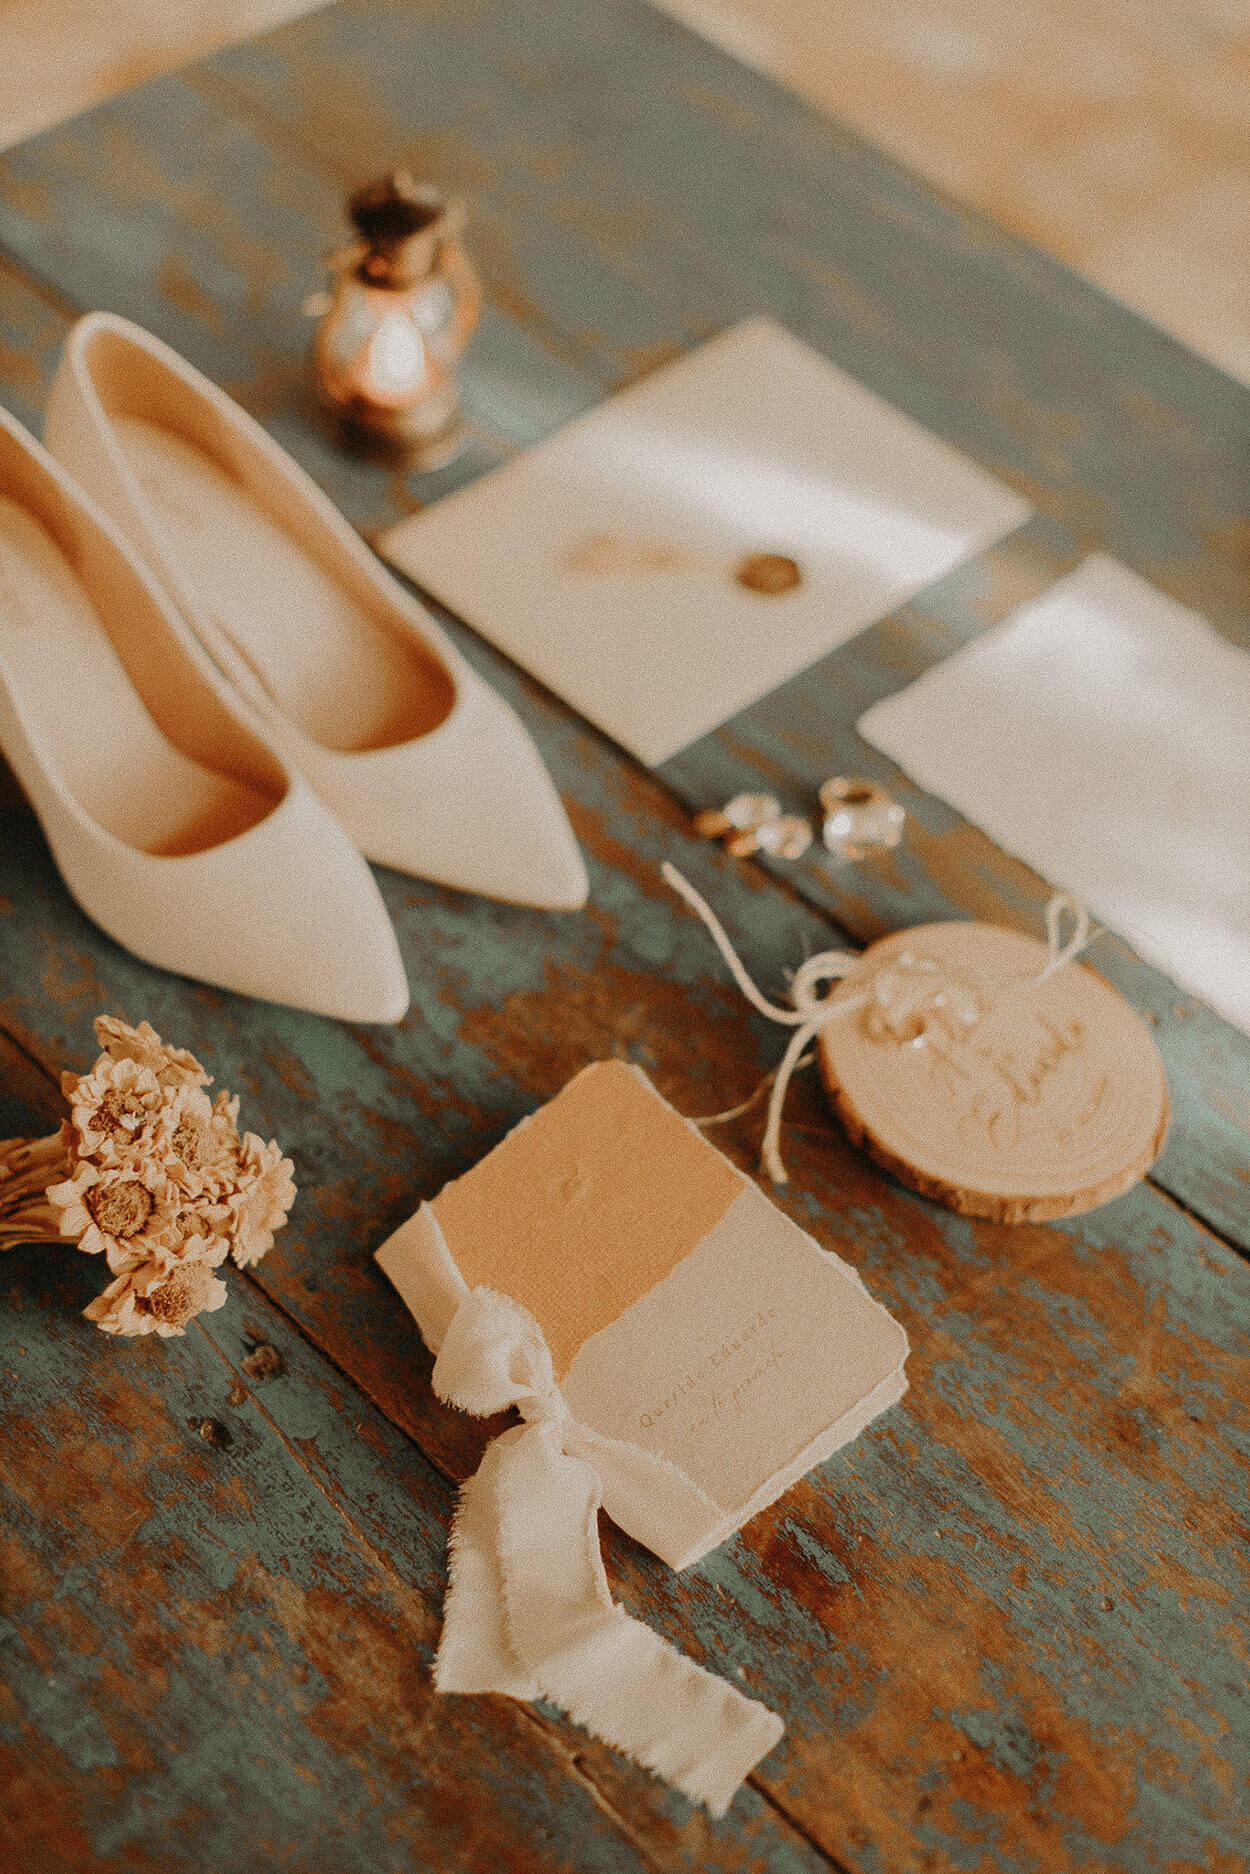 Sandália e envelopes na mesa